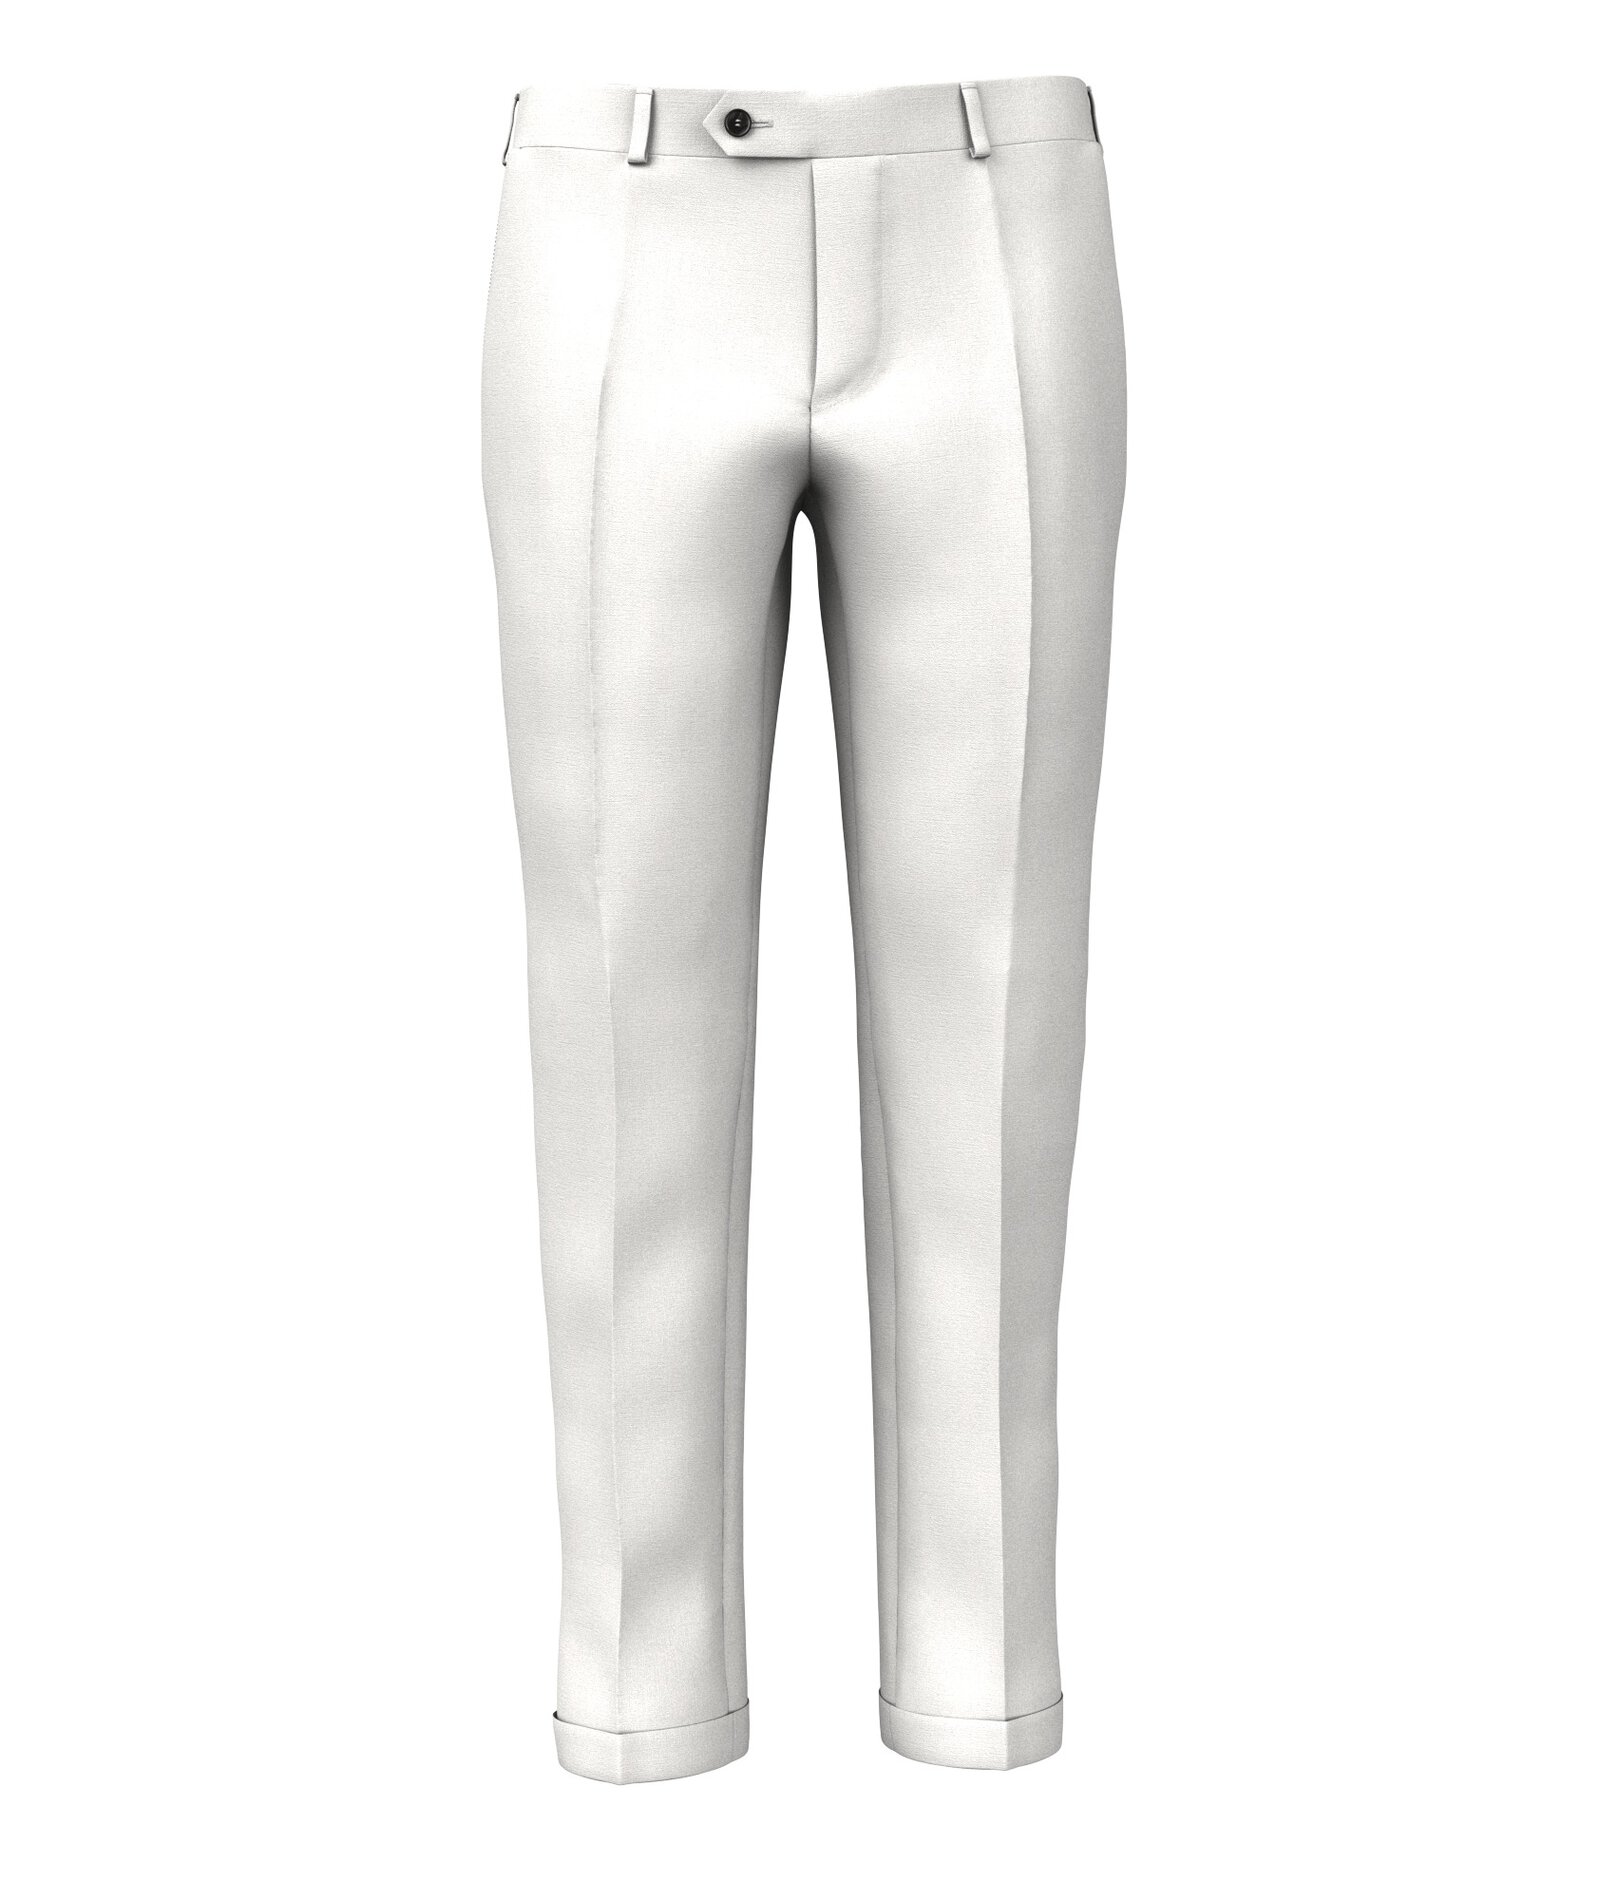 Image of Pantaloni da uomo su misura, Lanificio Zignone, Lana Tinta Unita Bianco, Quattro Stagioni | Lanieri